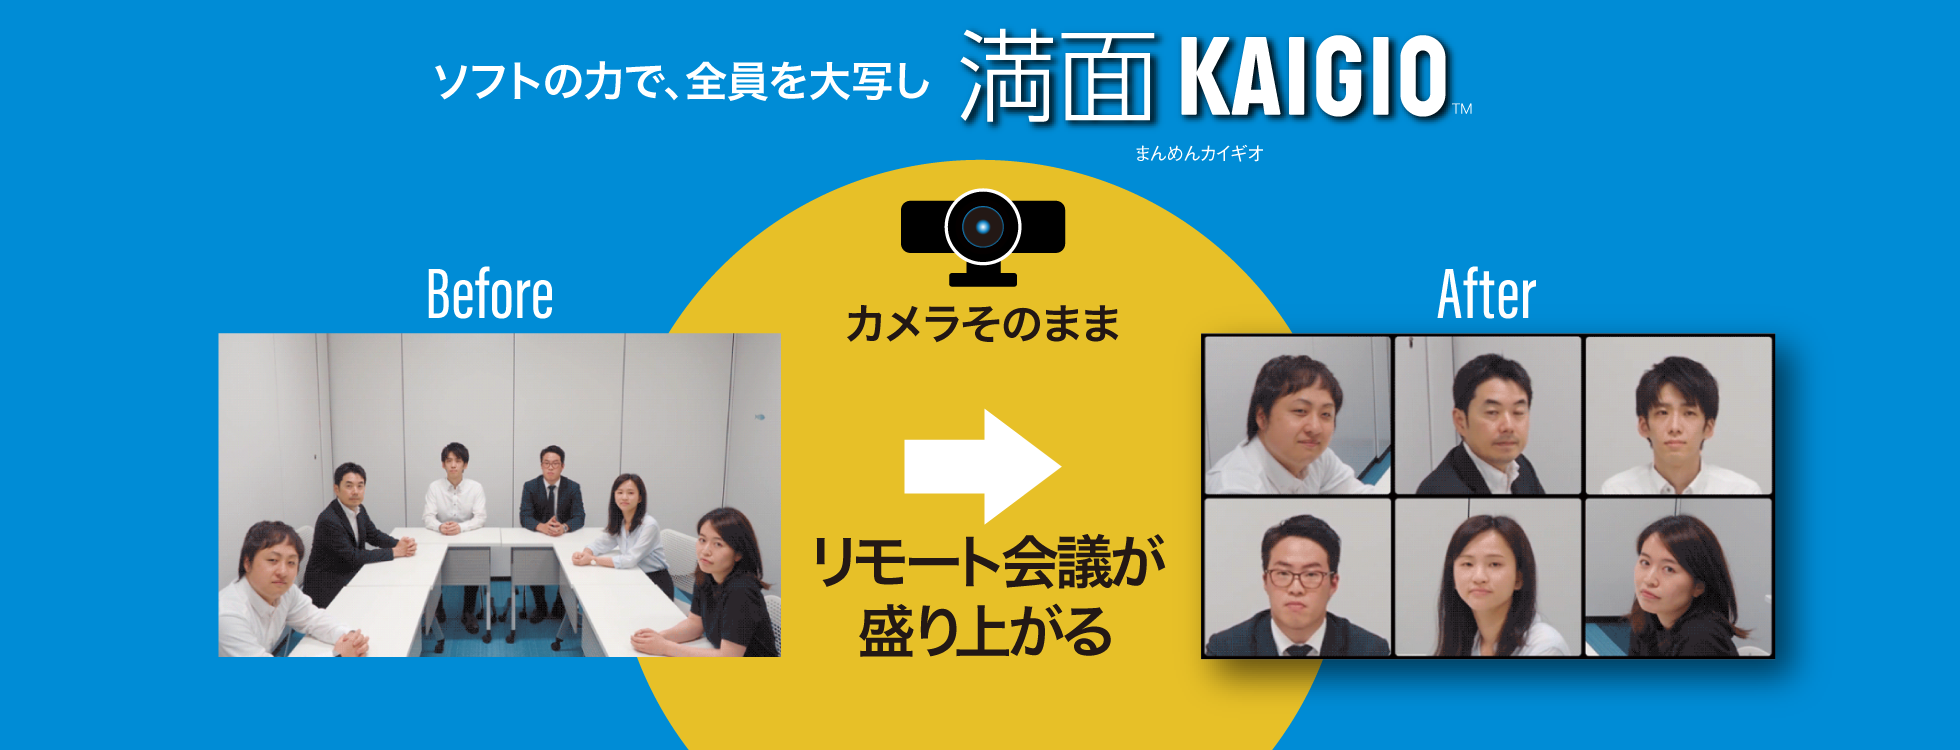 会議室カメラ用ソフト「満面KAIGIO」